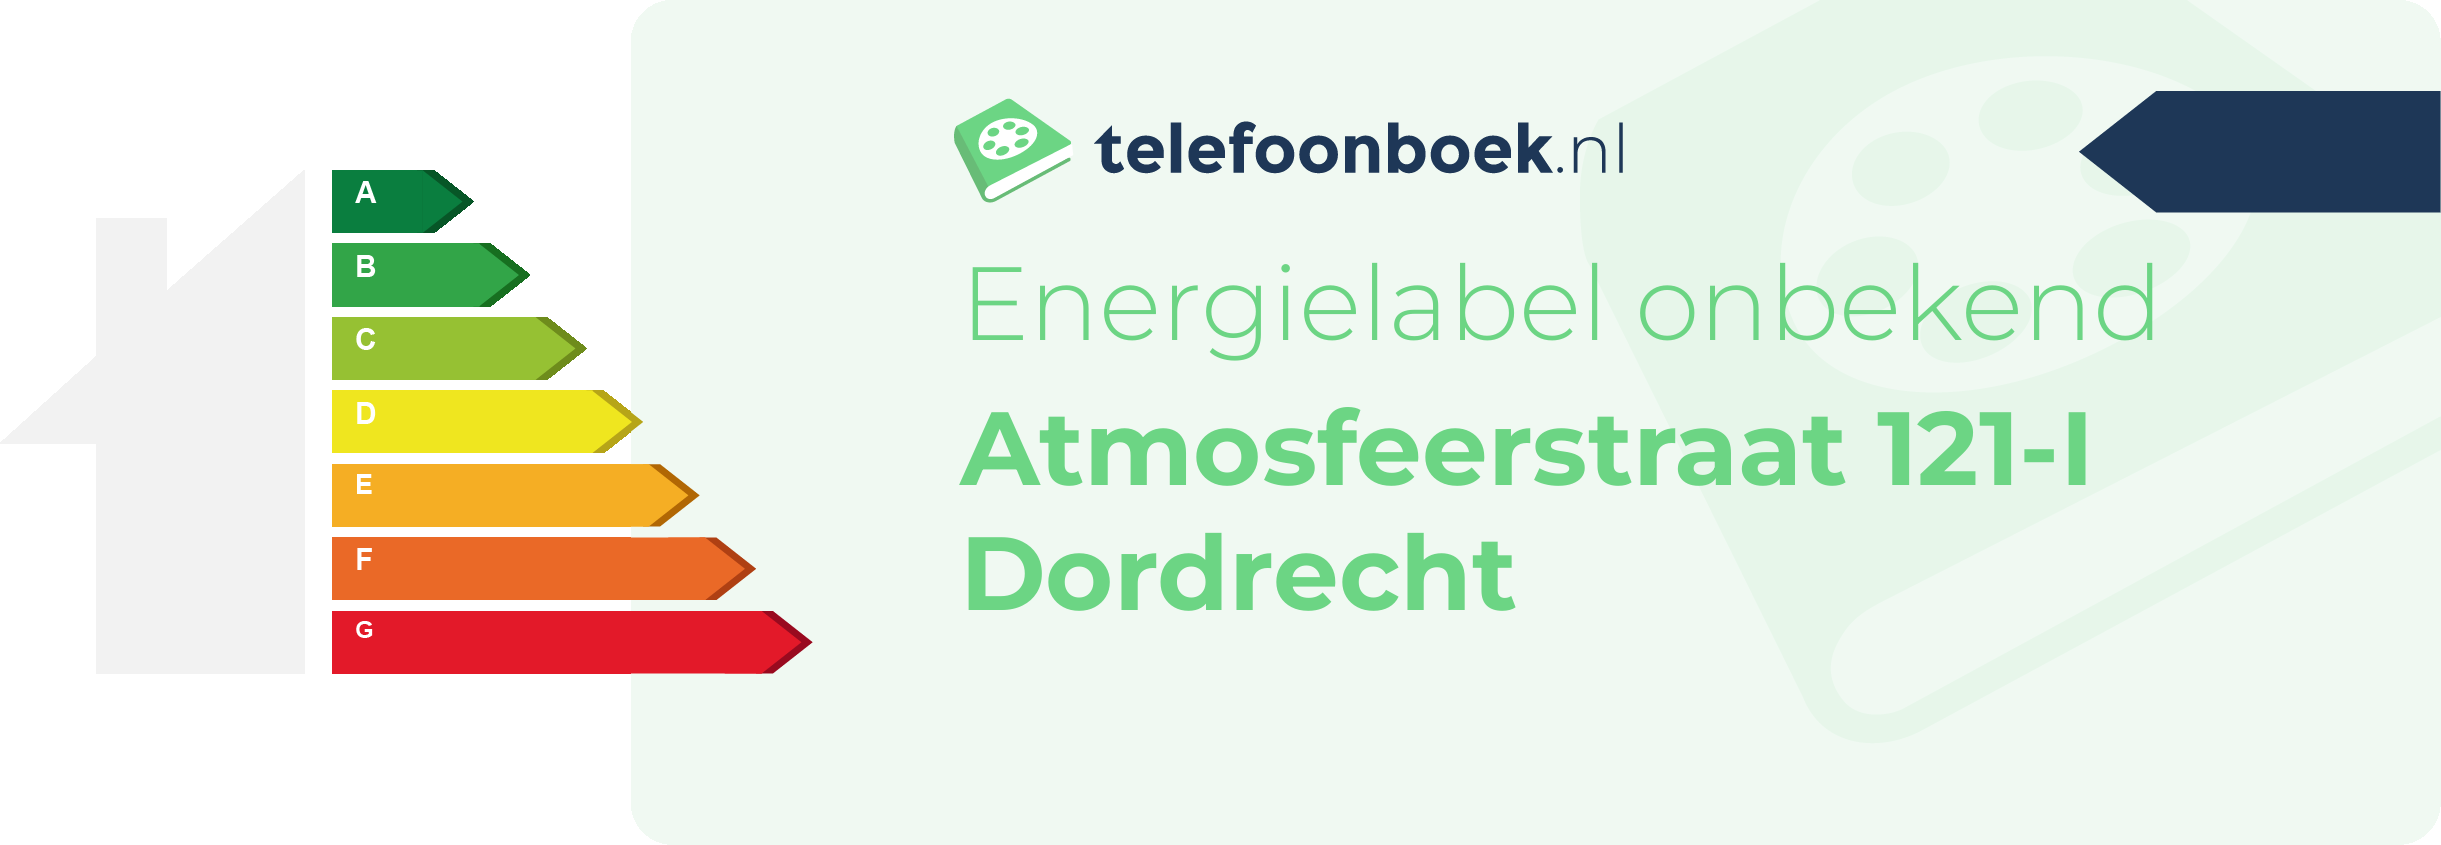 Energielabel Atmosfeerstraat 121-I Dordrecht